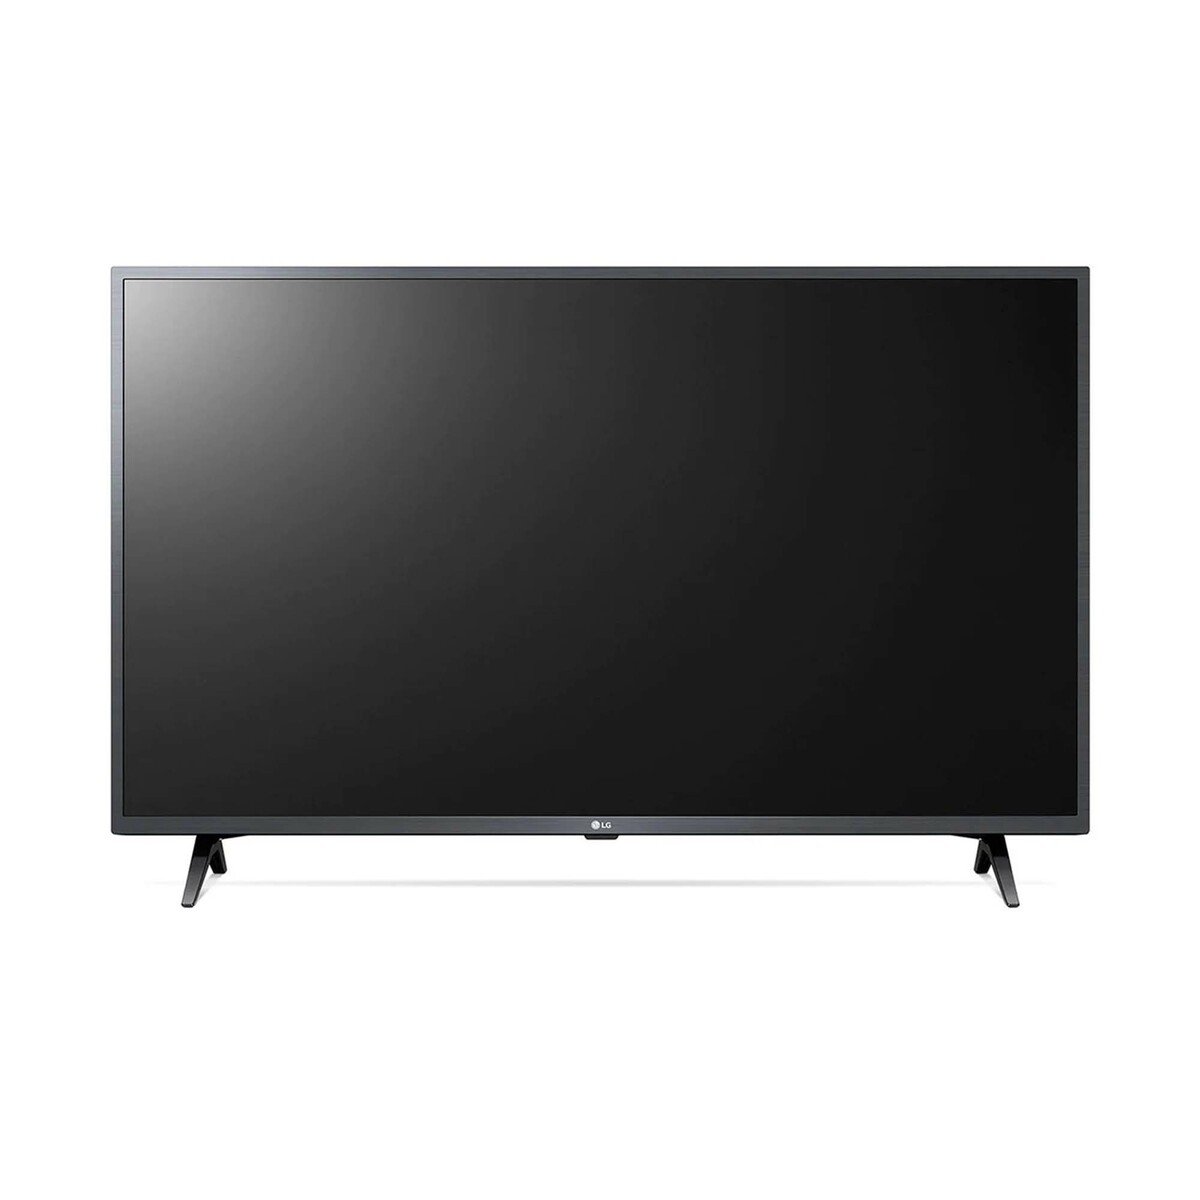 LG Full HD Smart LED TV 43LM6300PVB 43"